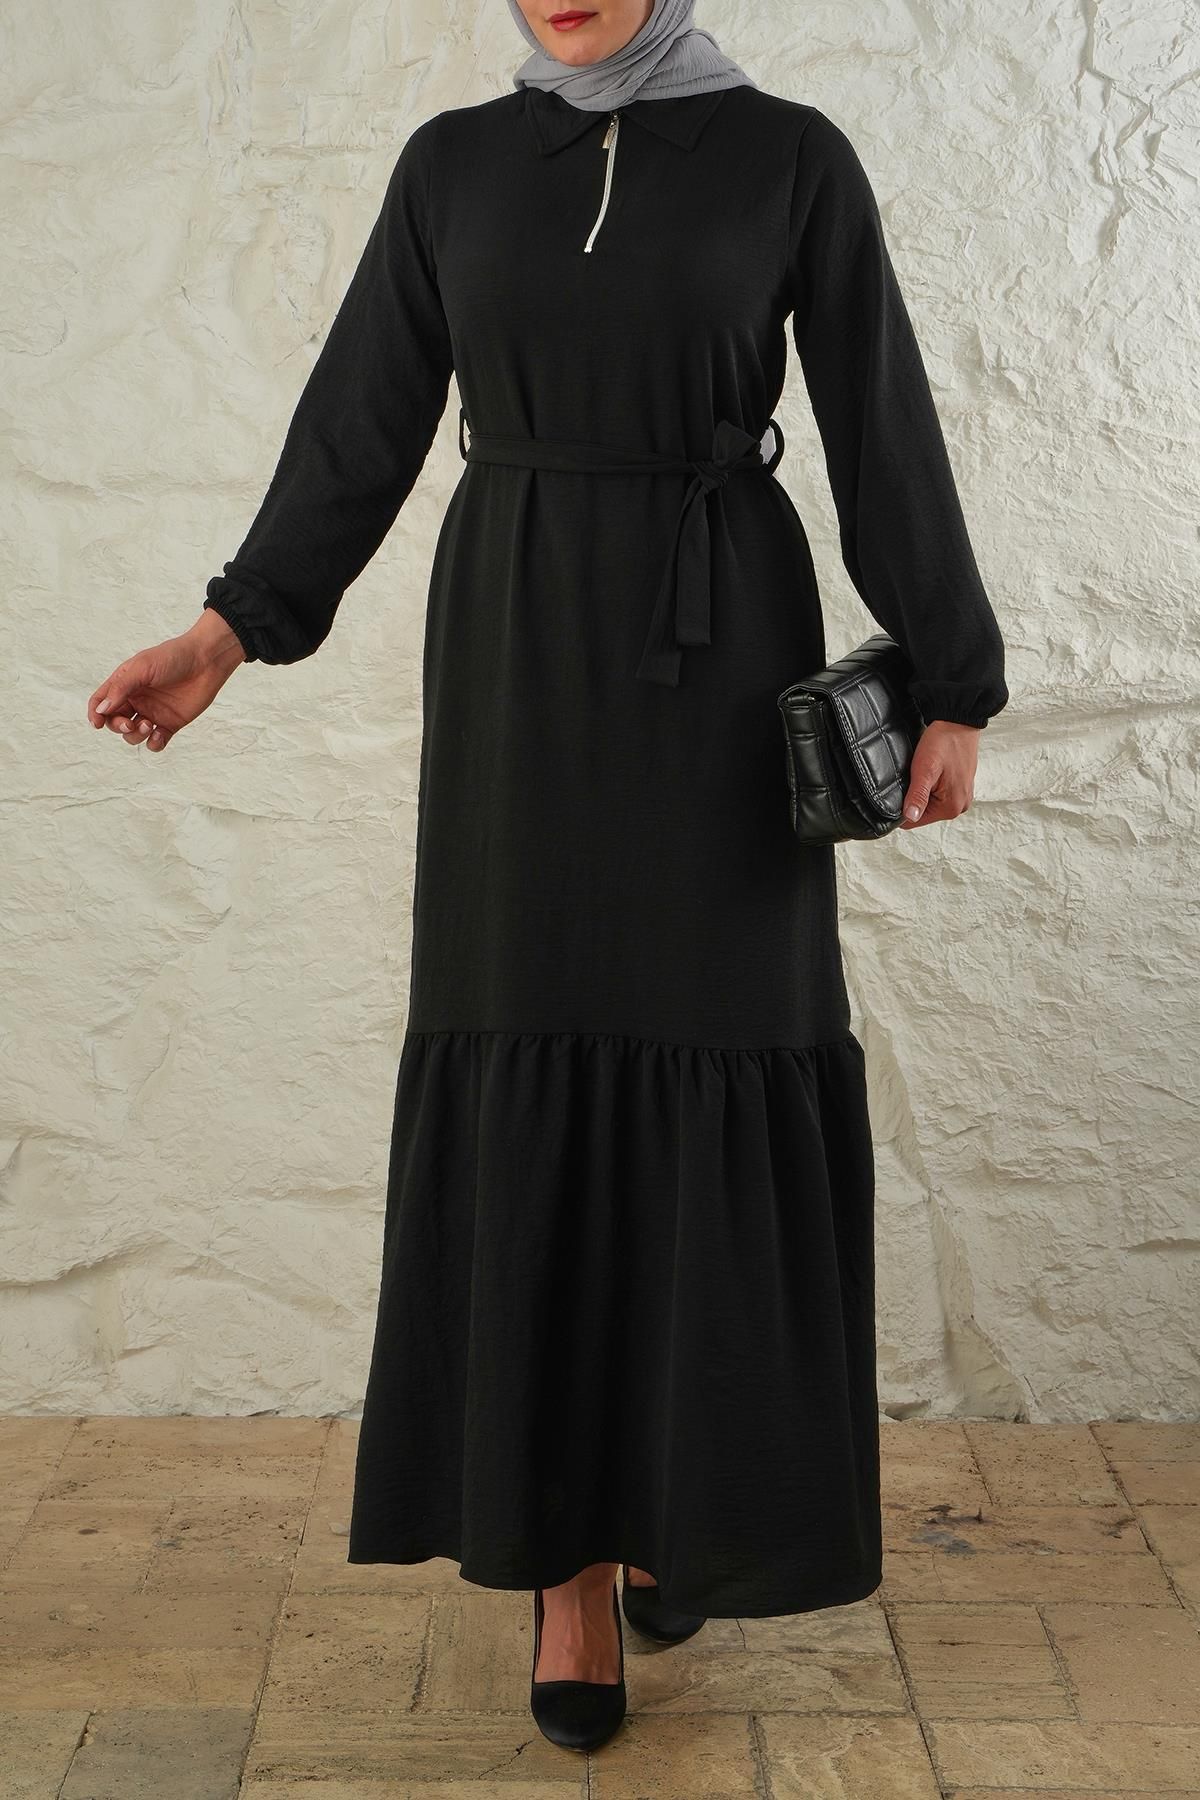 LİVE SPORT Kadın Aurobin Kumaş Yarım Fermuarlı Tam Boy Elbise - Siyah